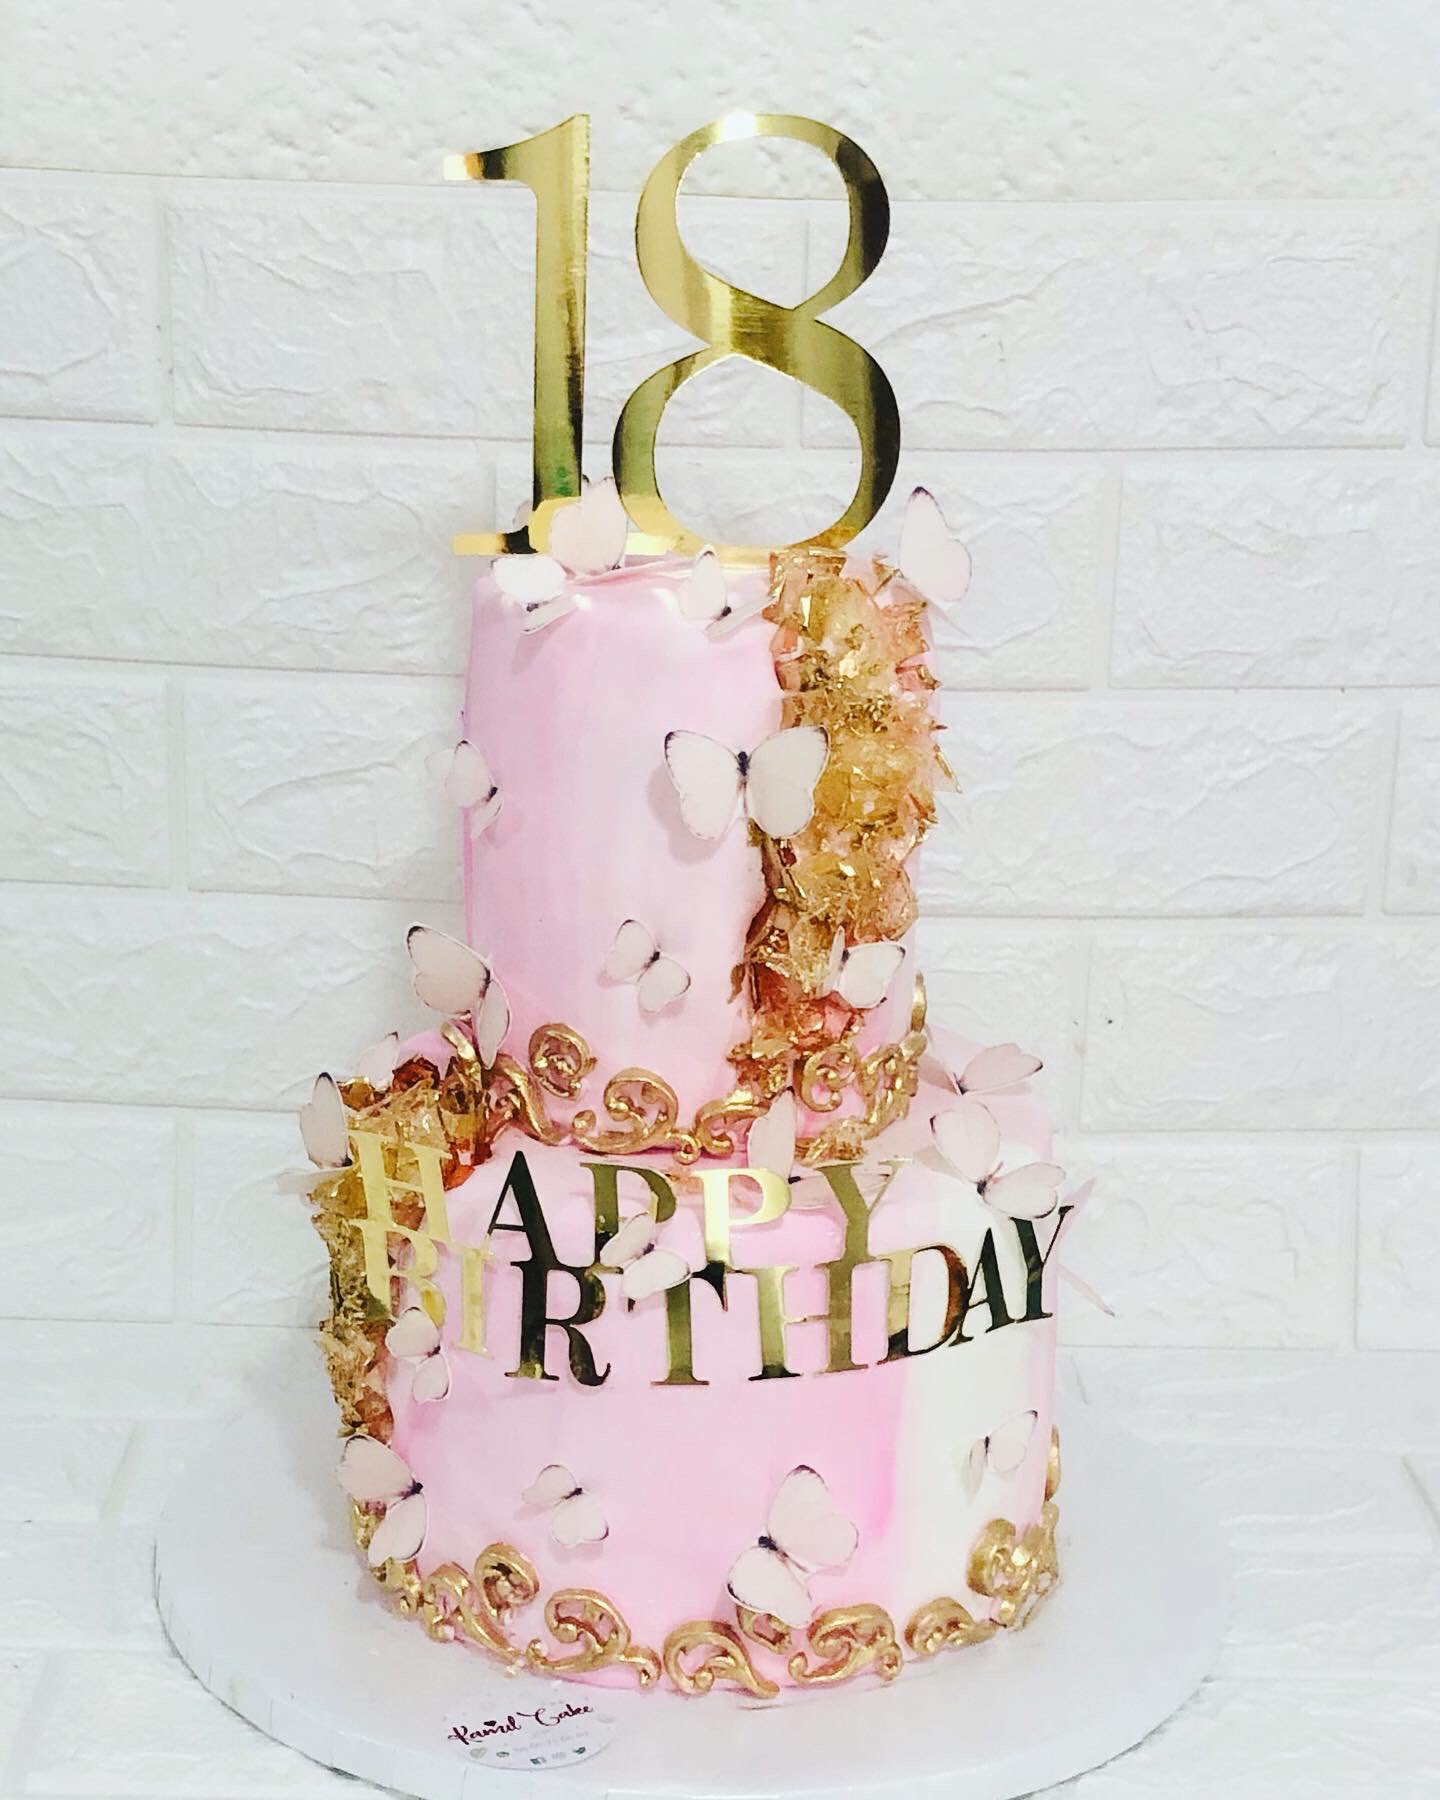 Florecer orden donante Kamil'cake on Twitter: "Pastel de Geoda para celebrar con mucho estilo tus 18  años! . 🎊🎂💕 . Los cristales son de azúcar y las mariposas de oblea.  #pastelfondant #pastel #pastelgeoda #geodecake #party18years #